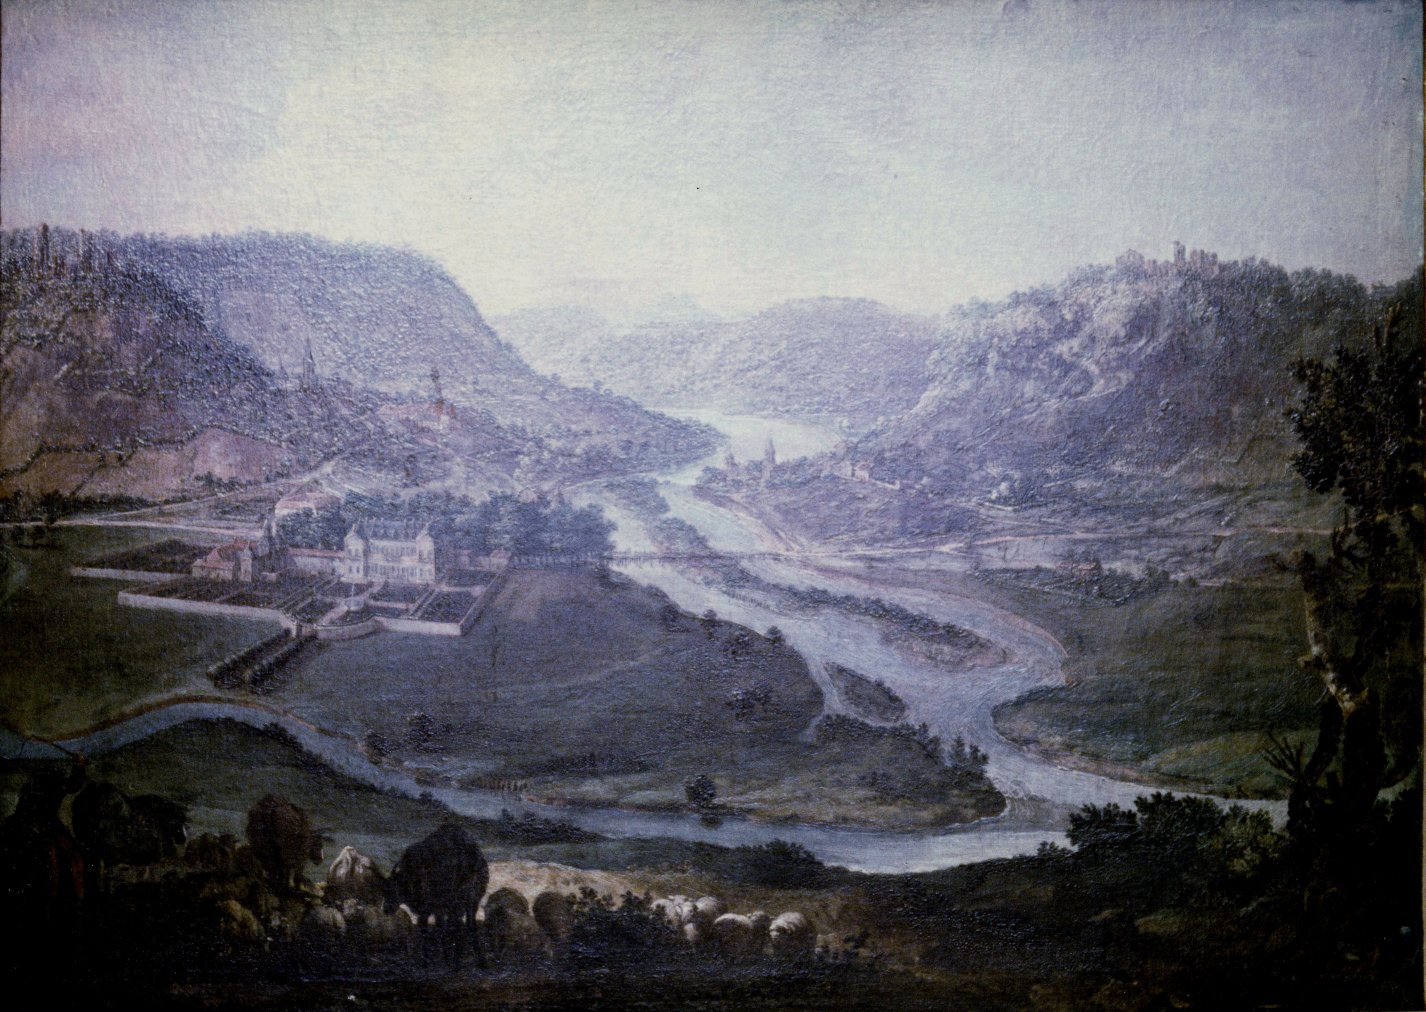 Peinture du 18ème siècle, de la rencontre de la Moselle et de la Meurthe, entre Frouard et Pompey. D'après un tableau de Claude Jacquart exposé au musée Lorrain à Nancy (photographie couleur : Gaston Gouret)